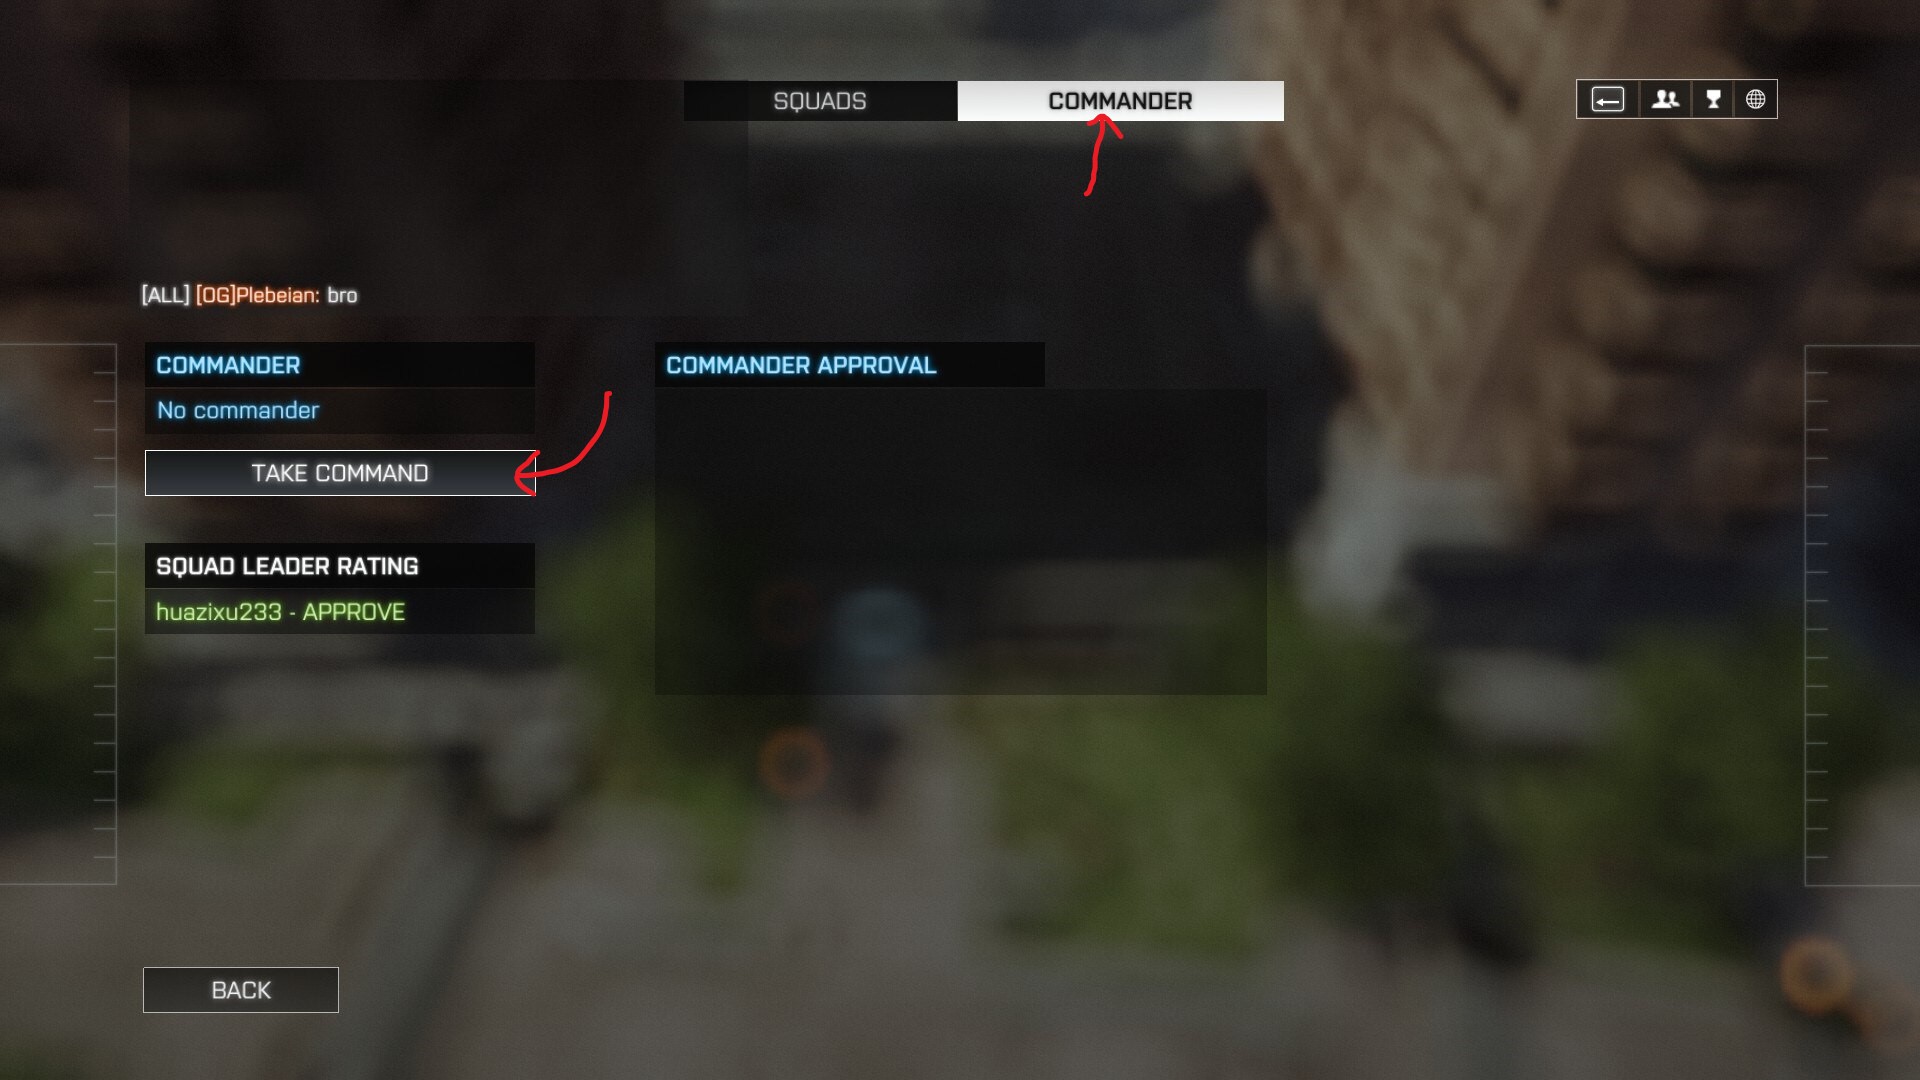 Руководство по лучшей стратегии и тактике Battlefield 4 ™ для командира - что такое командный режим? Как я могу играть как один? - 47594D6